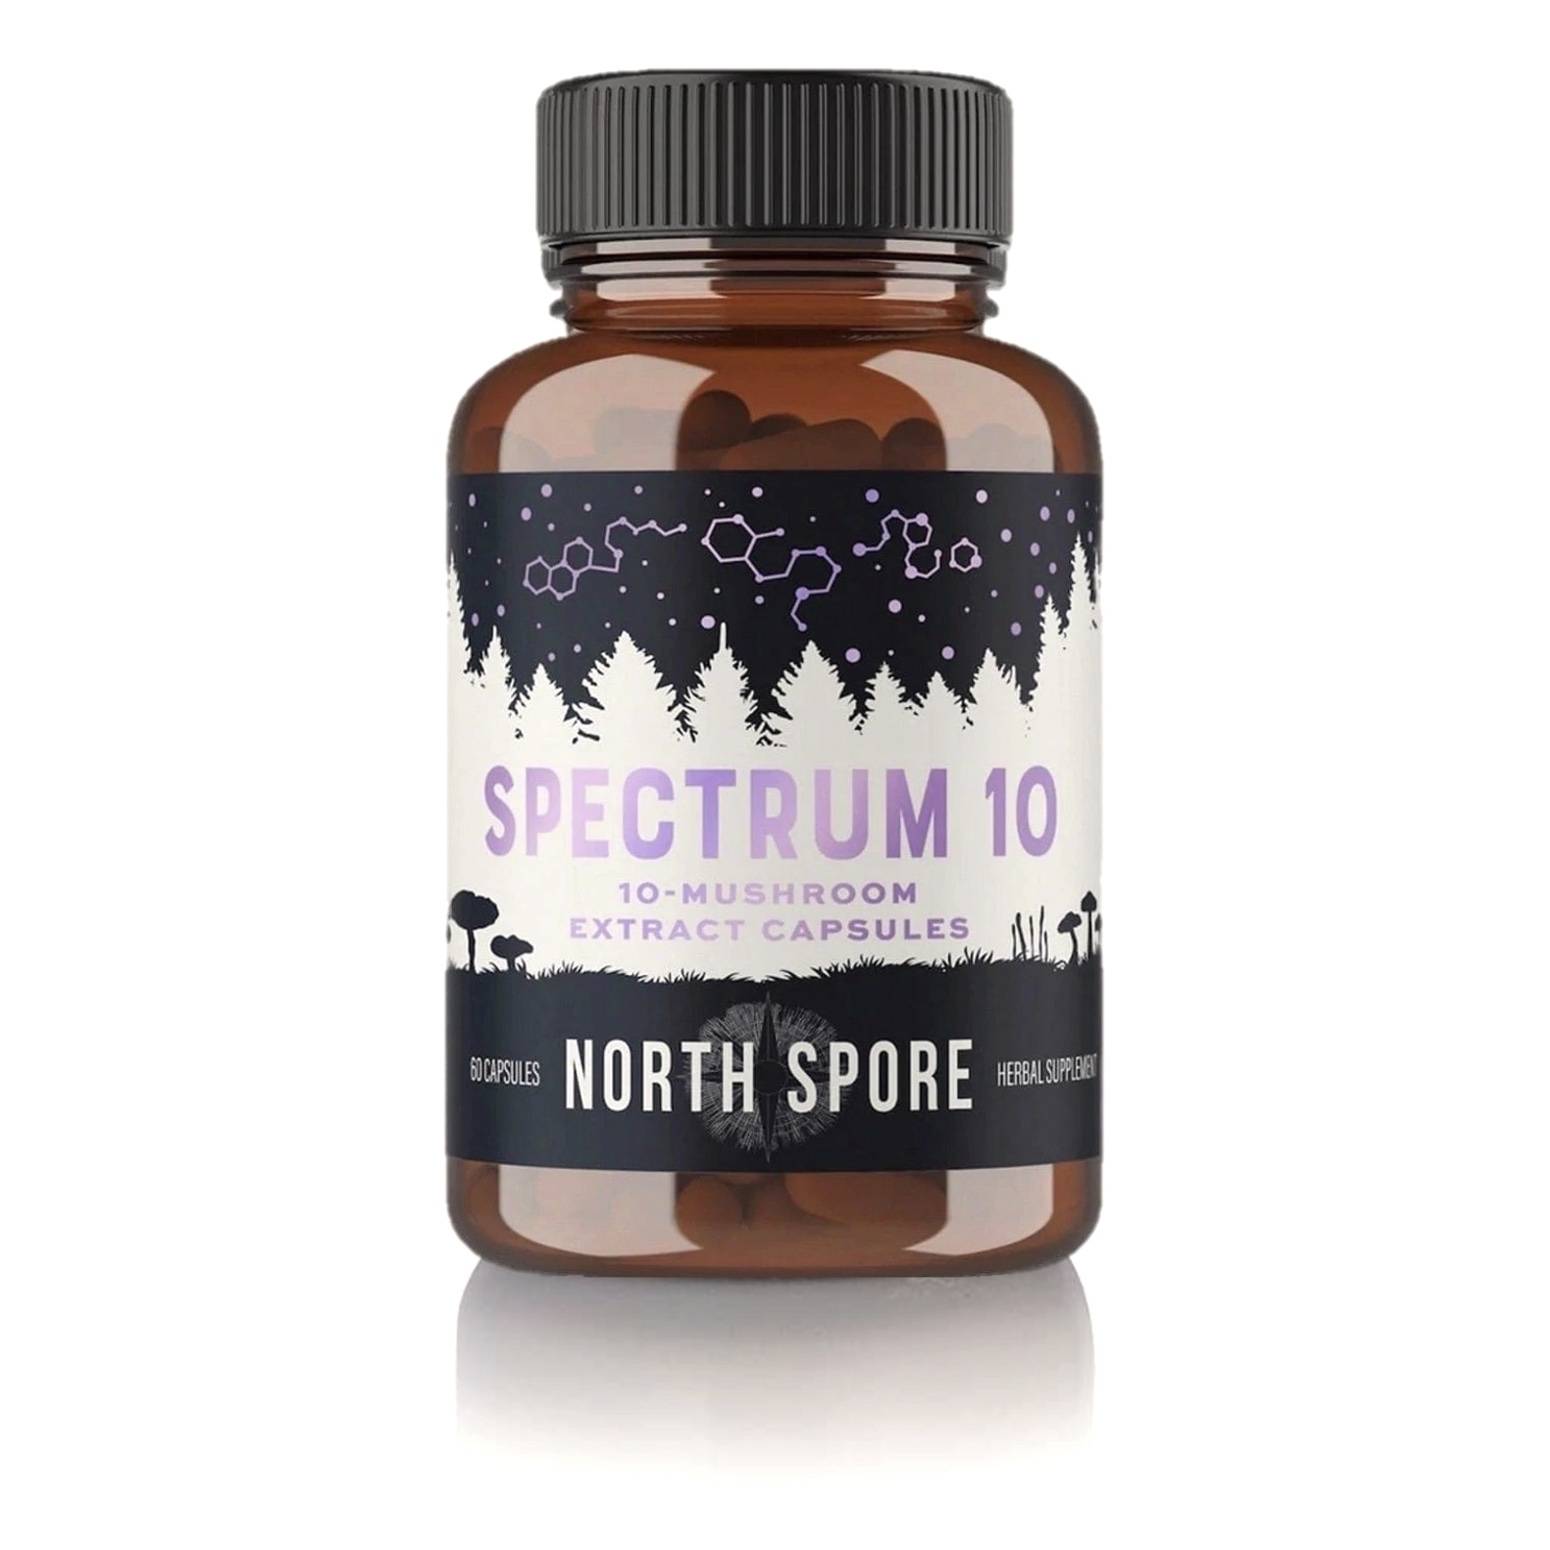 Spectrum 10 Organic Multi-Mushroom Extract Capsules